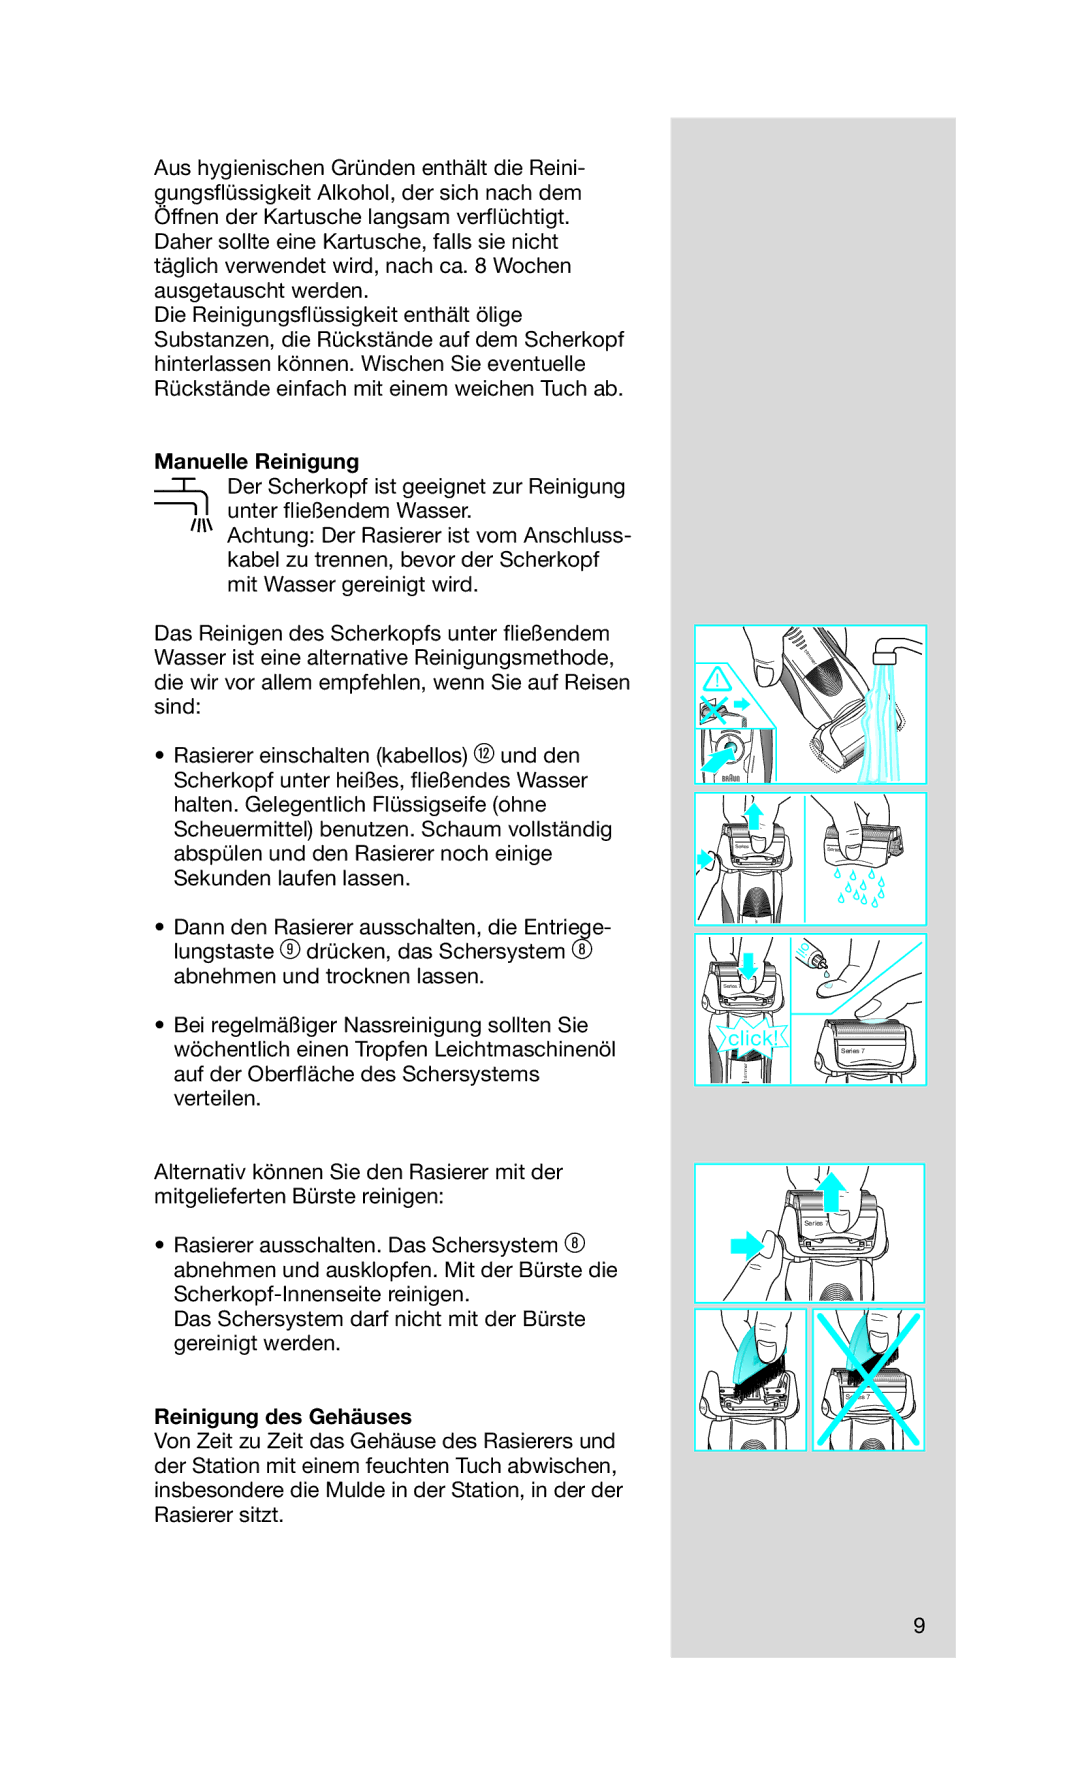 Braun 790 cc manual Manuelle Reinigung, Reinigung des Gehäuses 